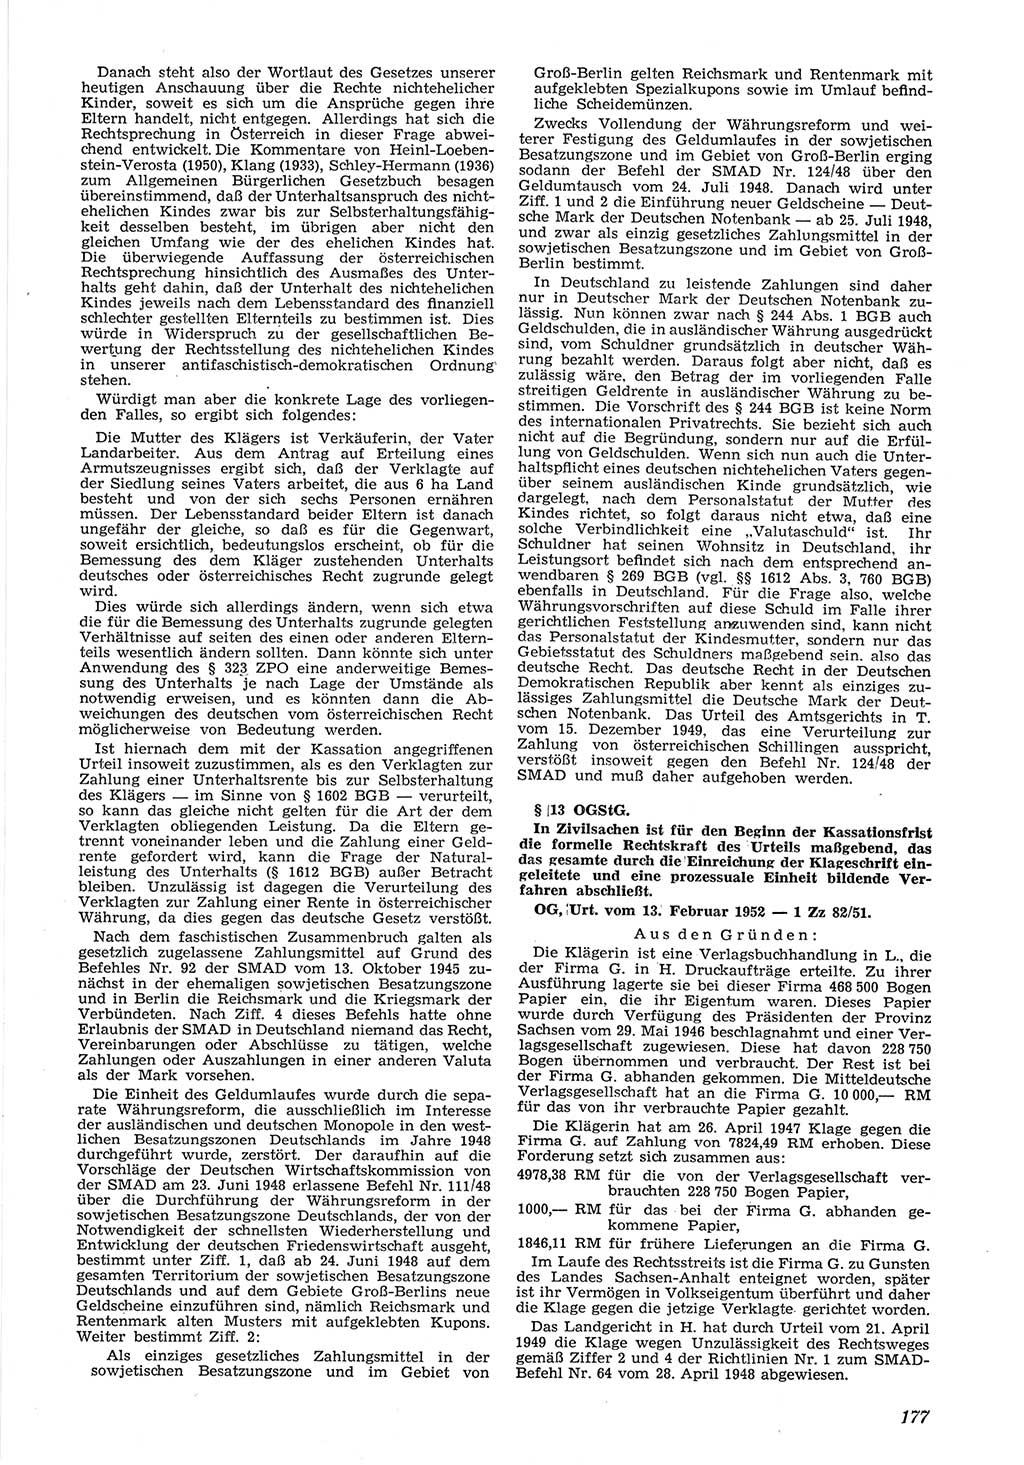 Neue Justiz (NJ), Zeitschrift für Recht und Rechtswissenschaft [Deutsche Demokratische Republik (DDR)], 6. Jahrgang 1952, Seite 177 (NJ DDR 1952, S. 177)